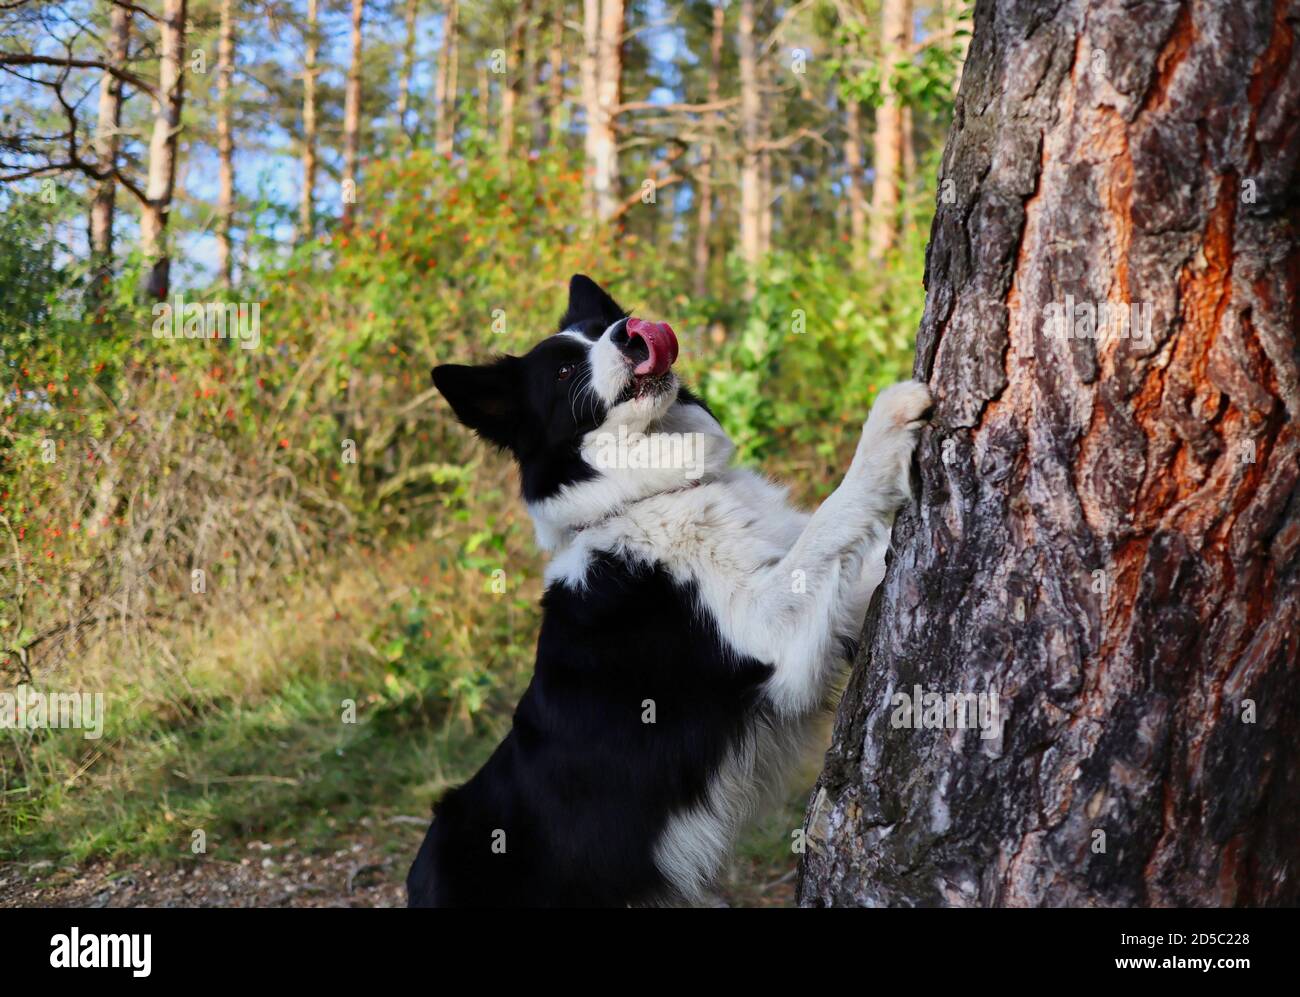 Active Border Collie mit Zunge aus springt mit seinem Paw on Tree Trunk während des sonnigen Herbsttages. Liebenswert schwarz und weiß Hund im Wald. Stockfoto